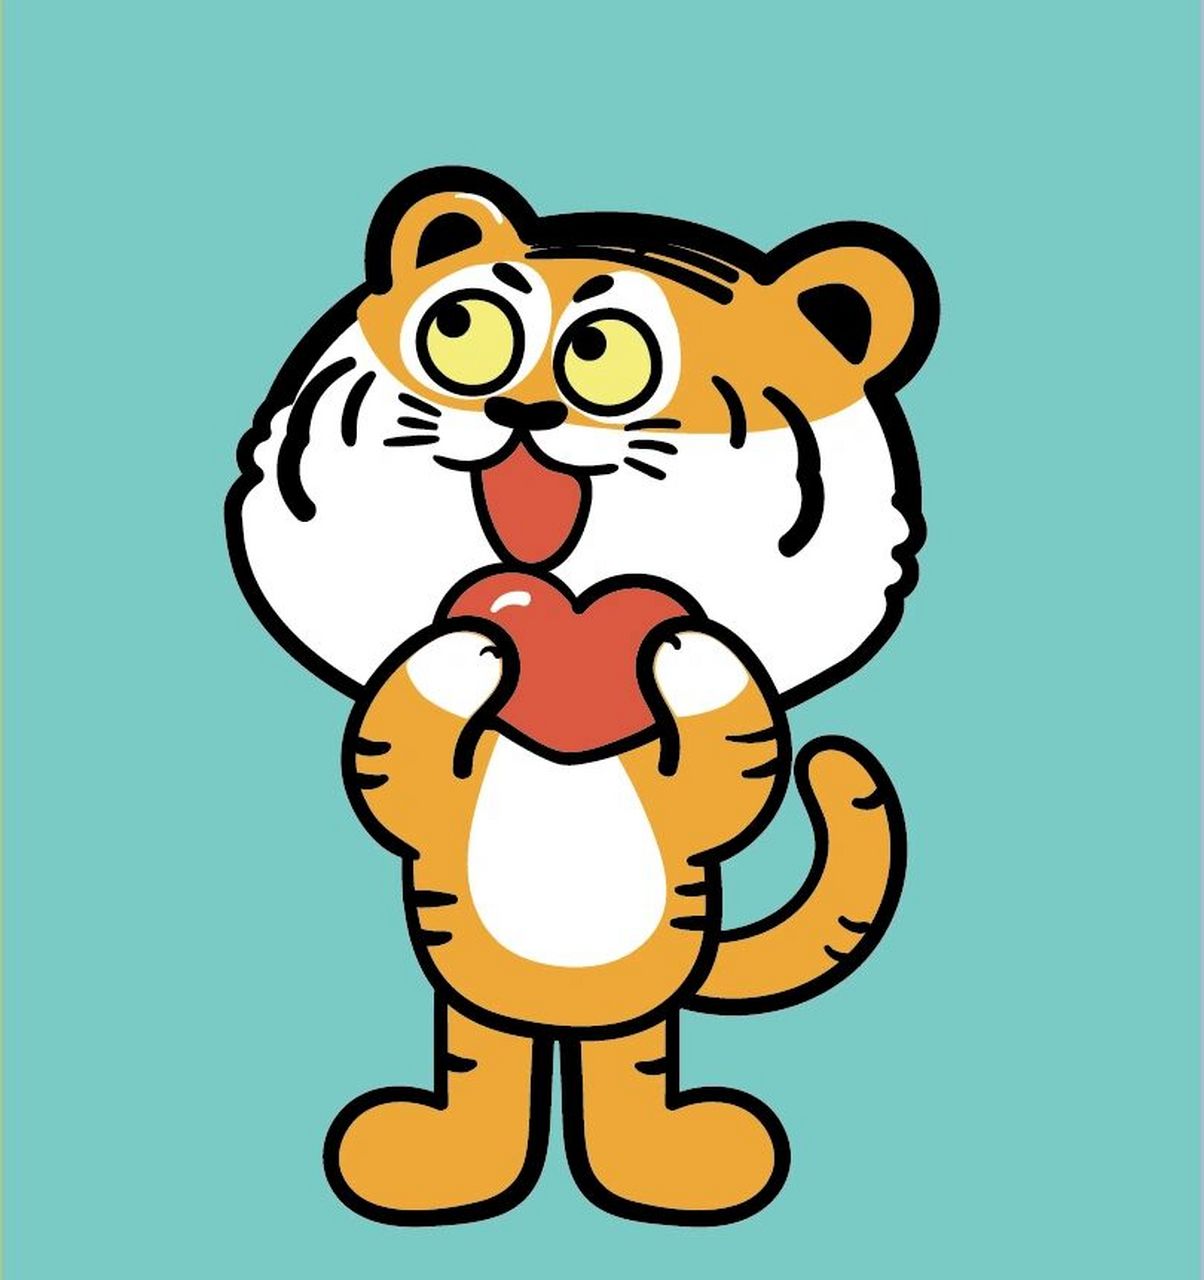 老虎 哆啦虎——微信表情包可下载 谢谢喜欢,欢迎截取转发做头像